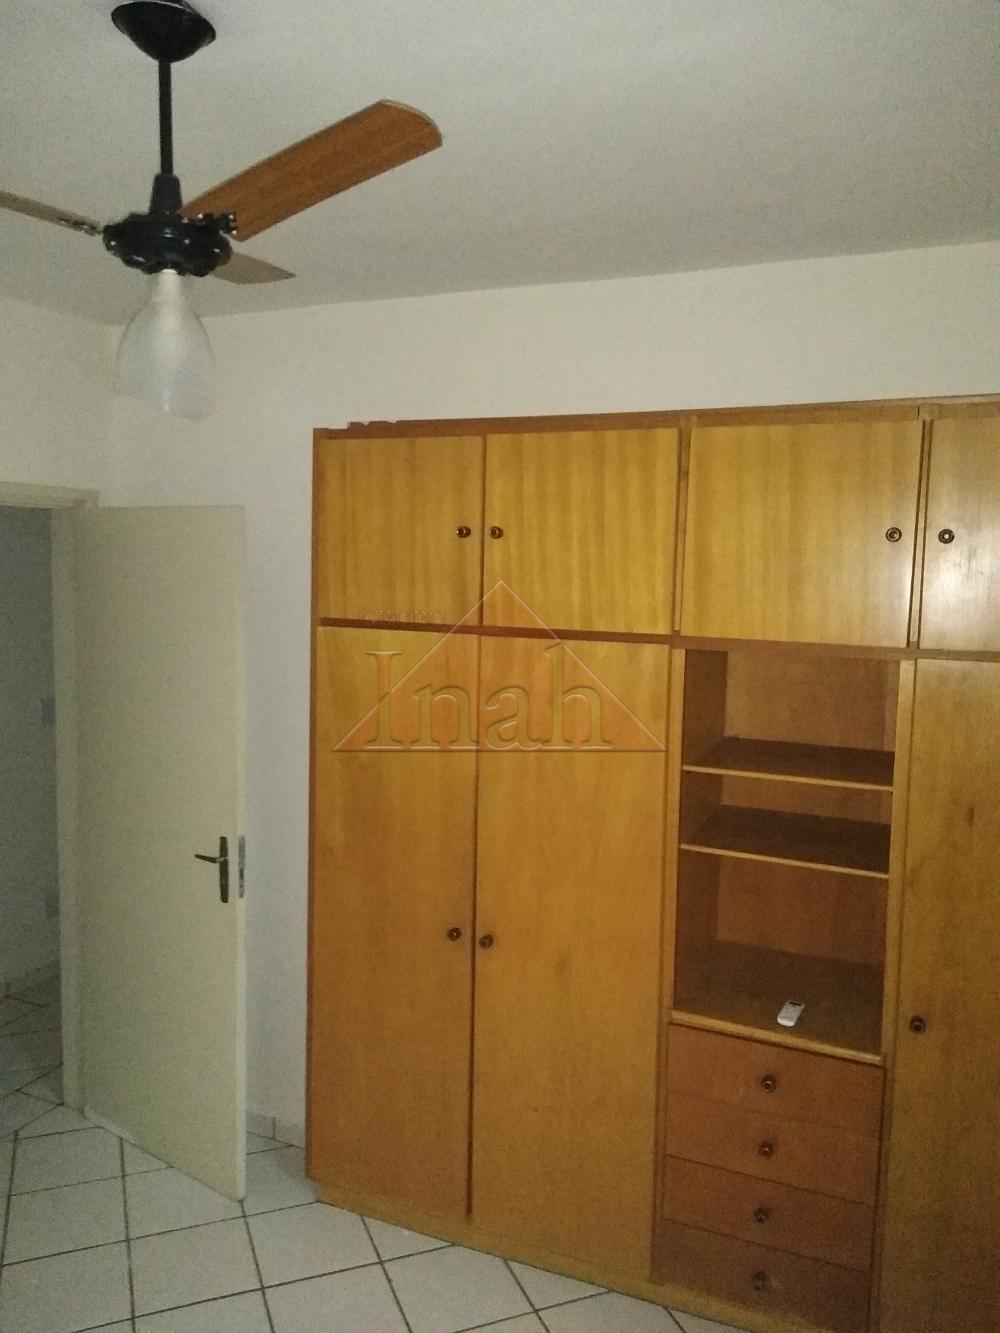 Alugar Casas / condomínio fechado em Ribeirão Preto R$ 1.000,00 - Foto 7